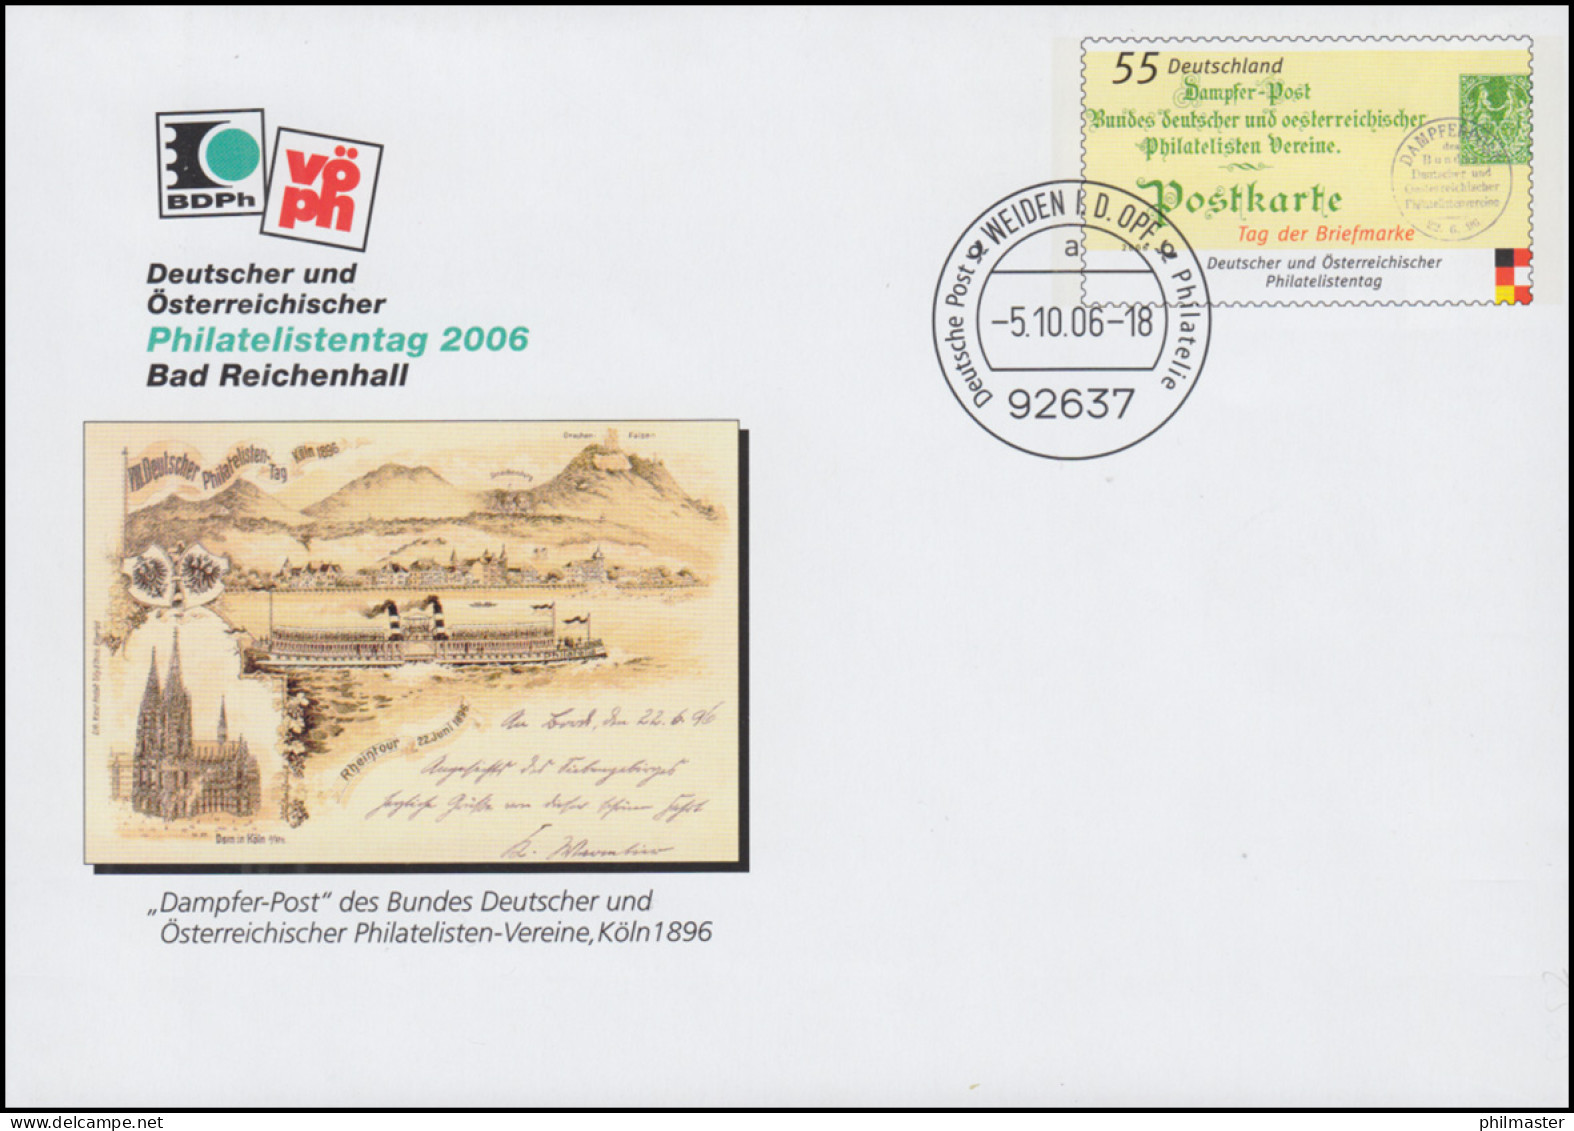 USo 122 Philatelistentag Bad Reichenhall - Dampferpost 2006, VS-O Weiden 5.10.06 - Briefomslagen - Ongebruikt